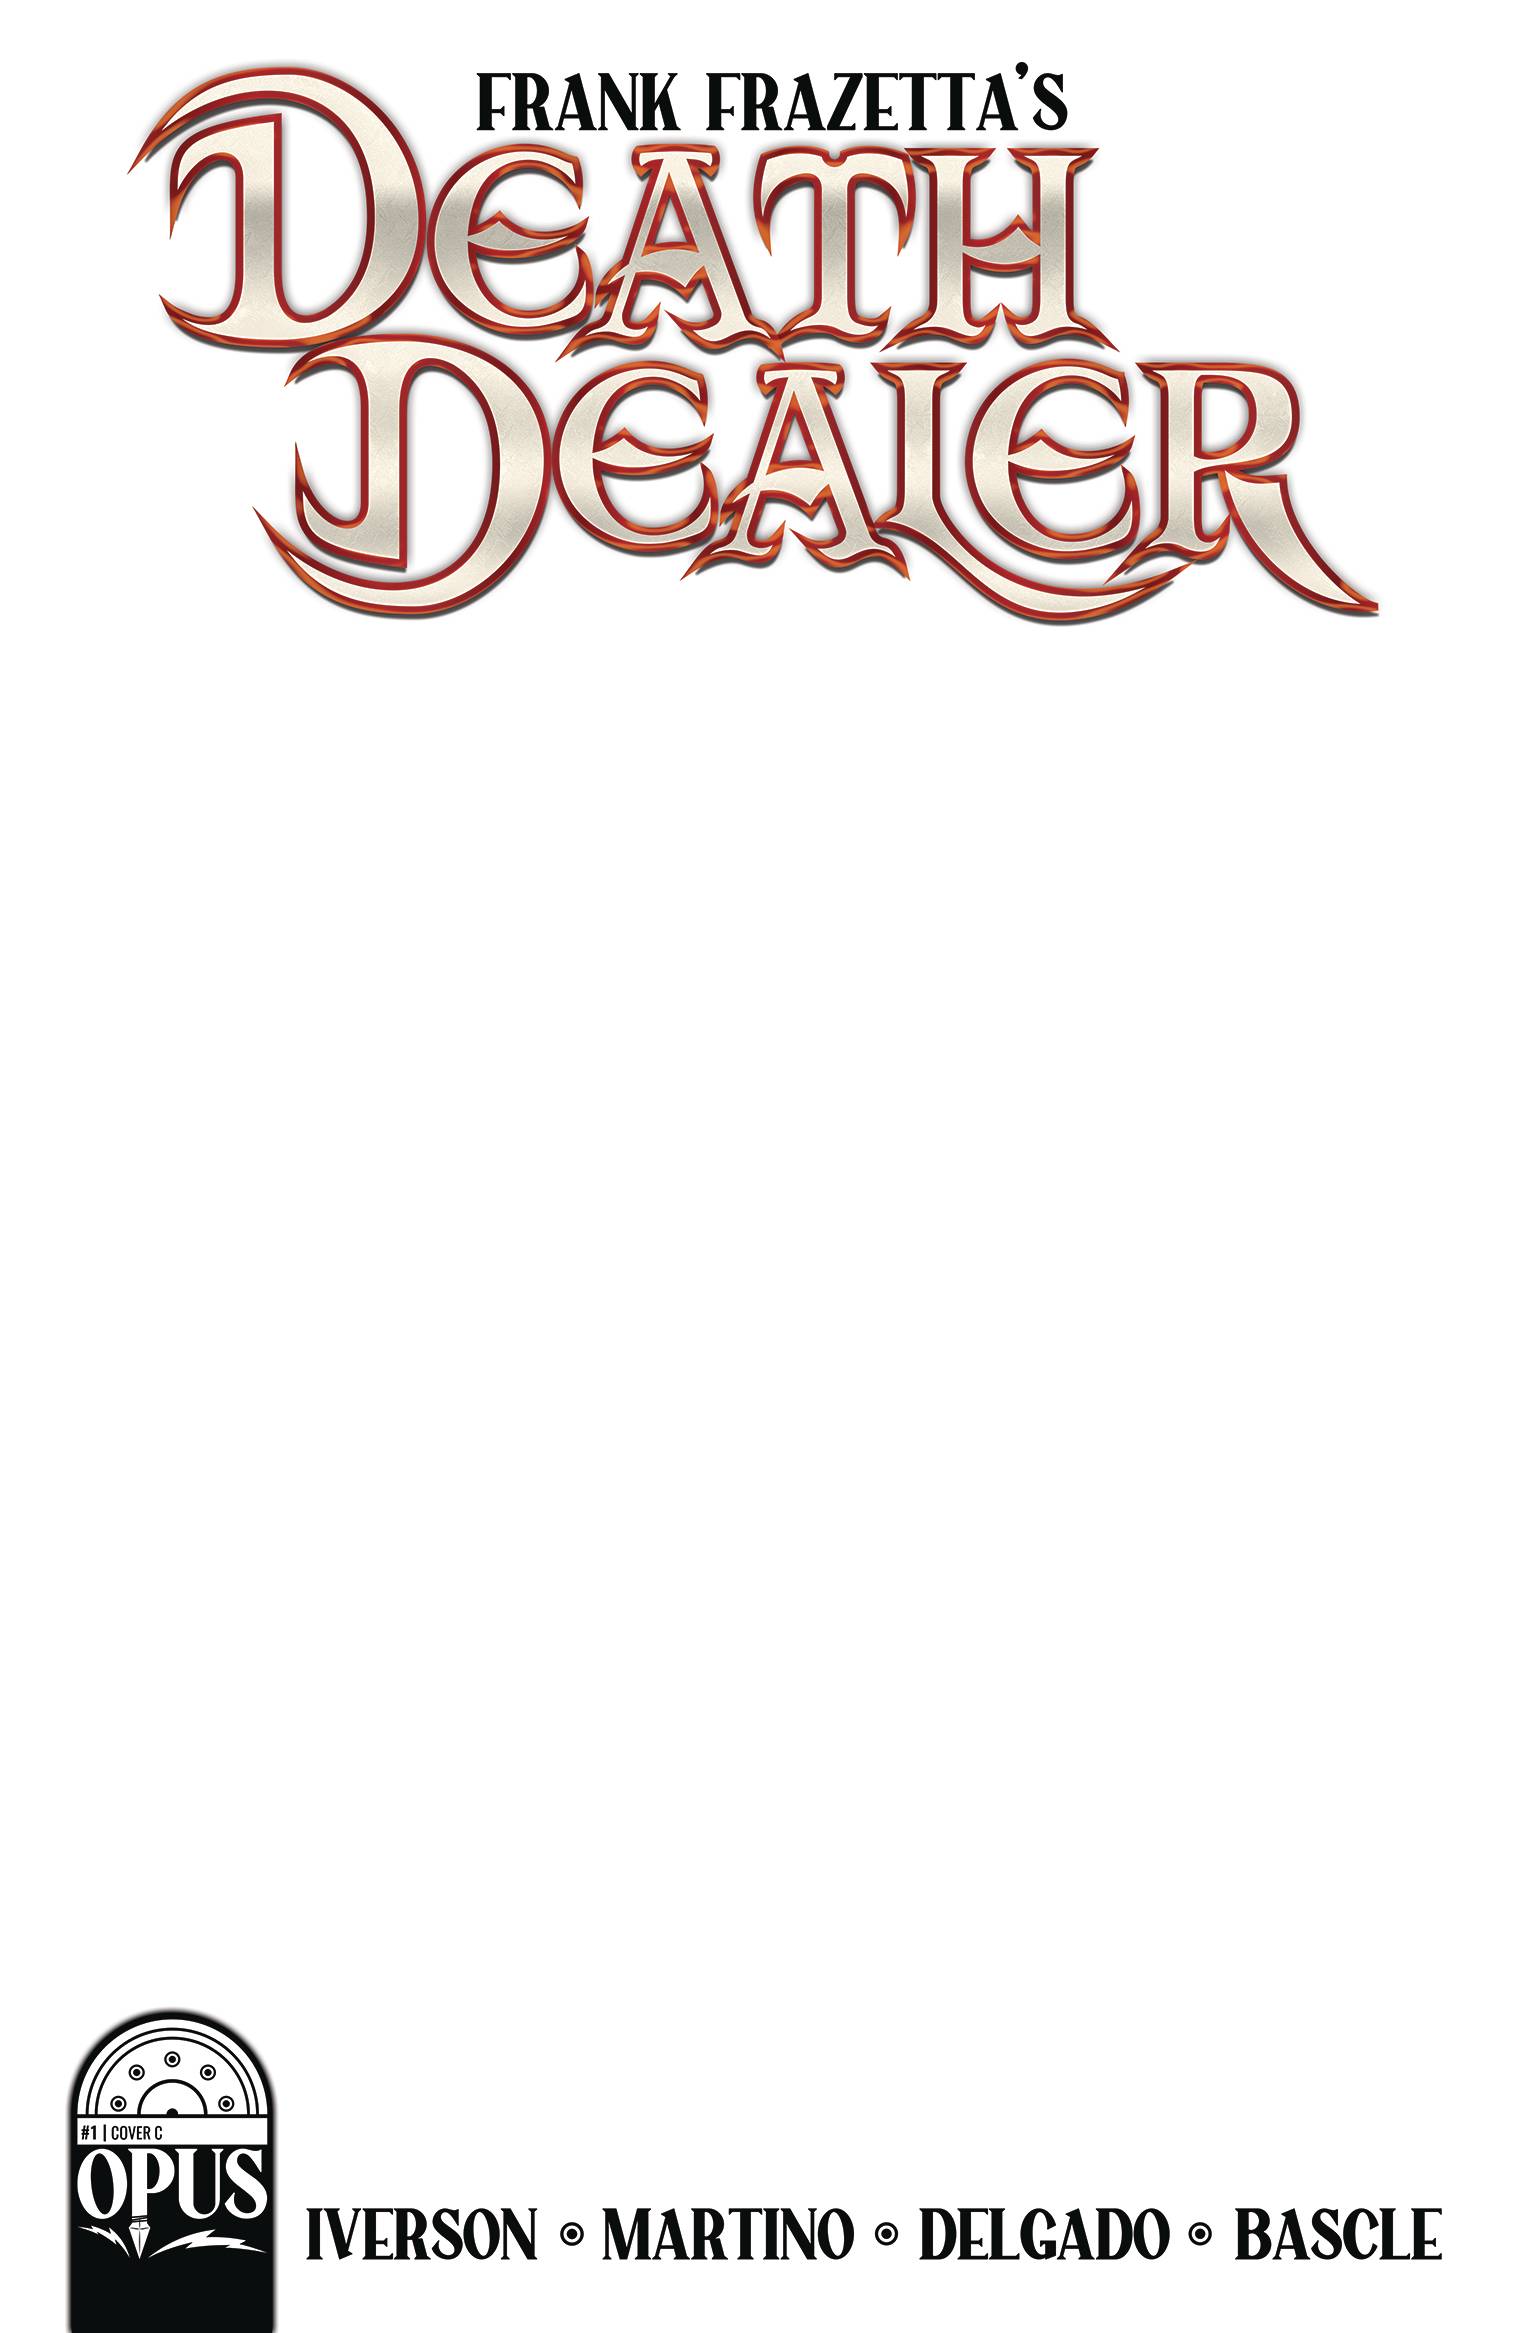 Frank Frazetta Death Dealer #1 Cover C 1 for 5 Incentive Blank Sketch